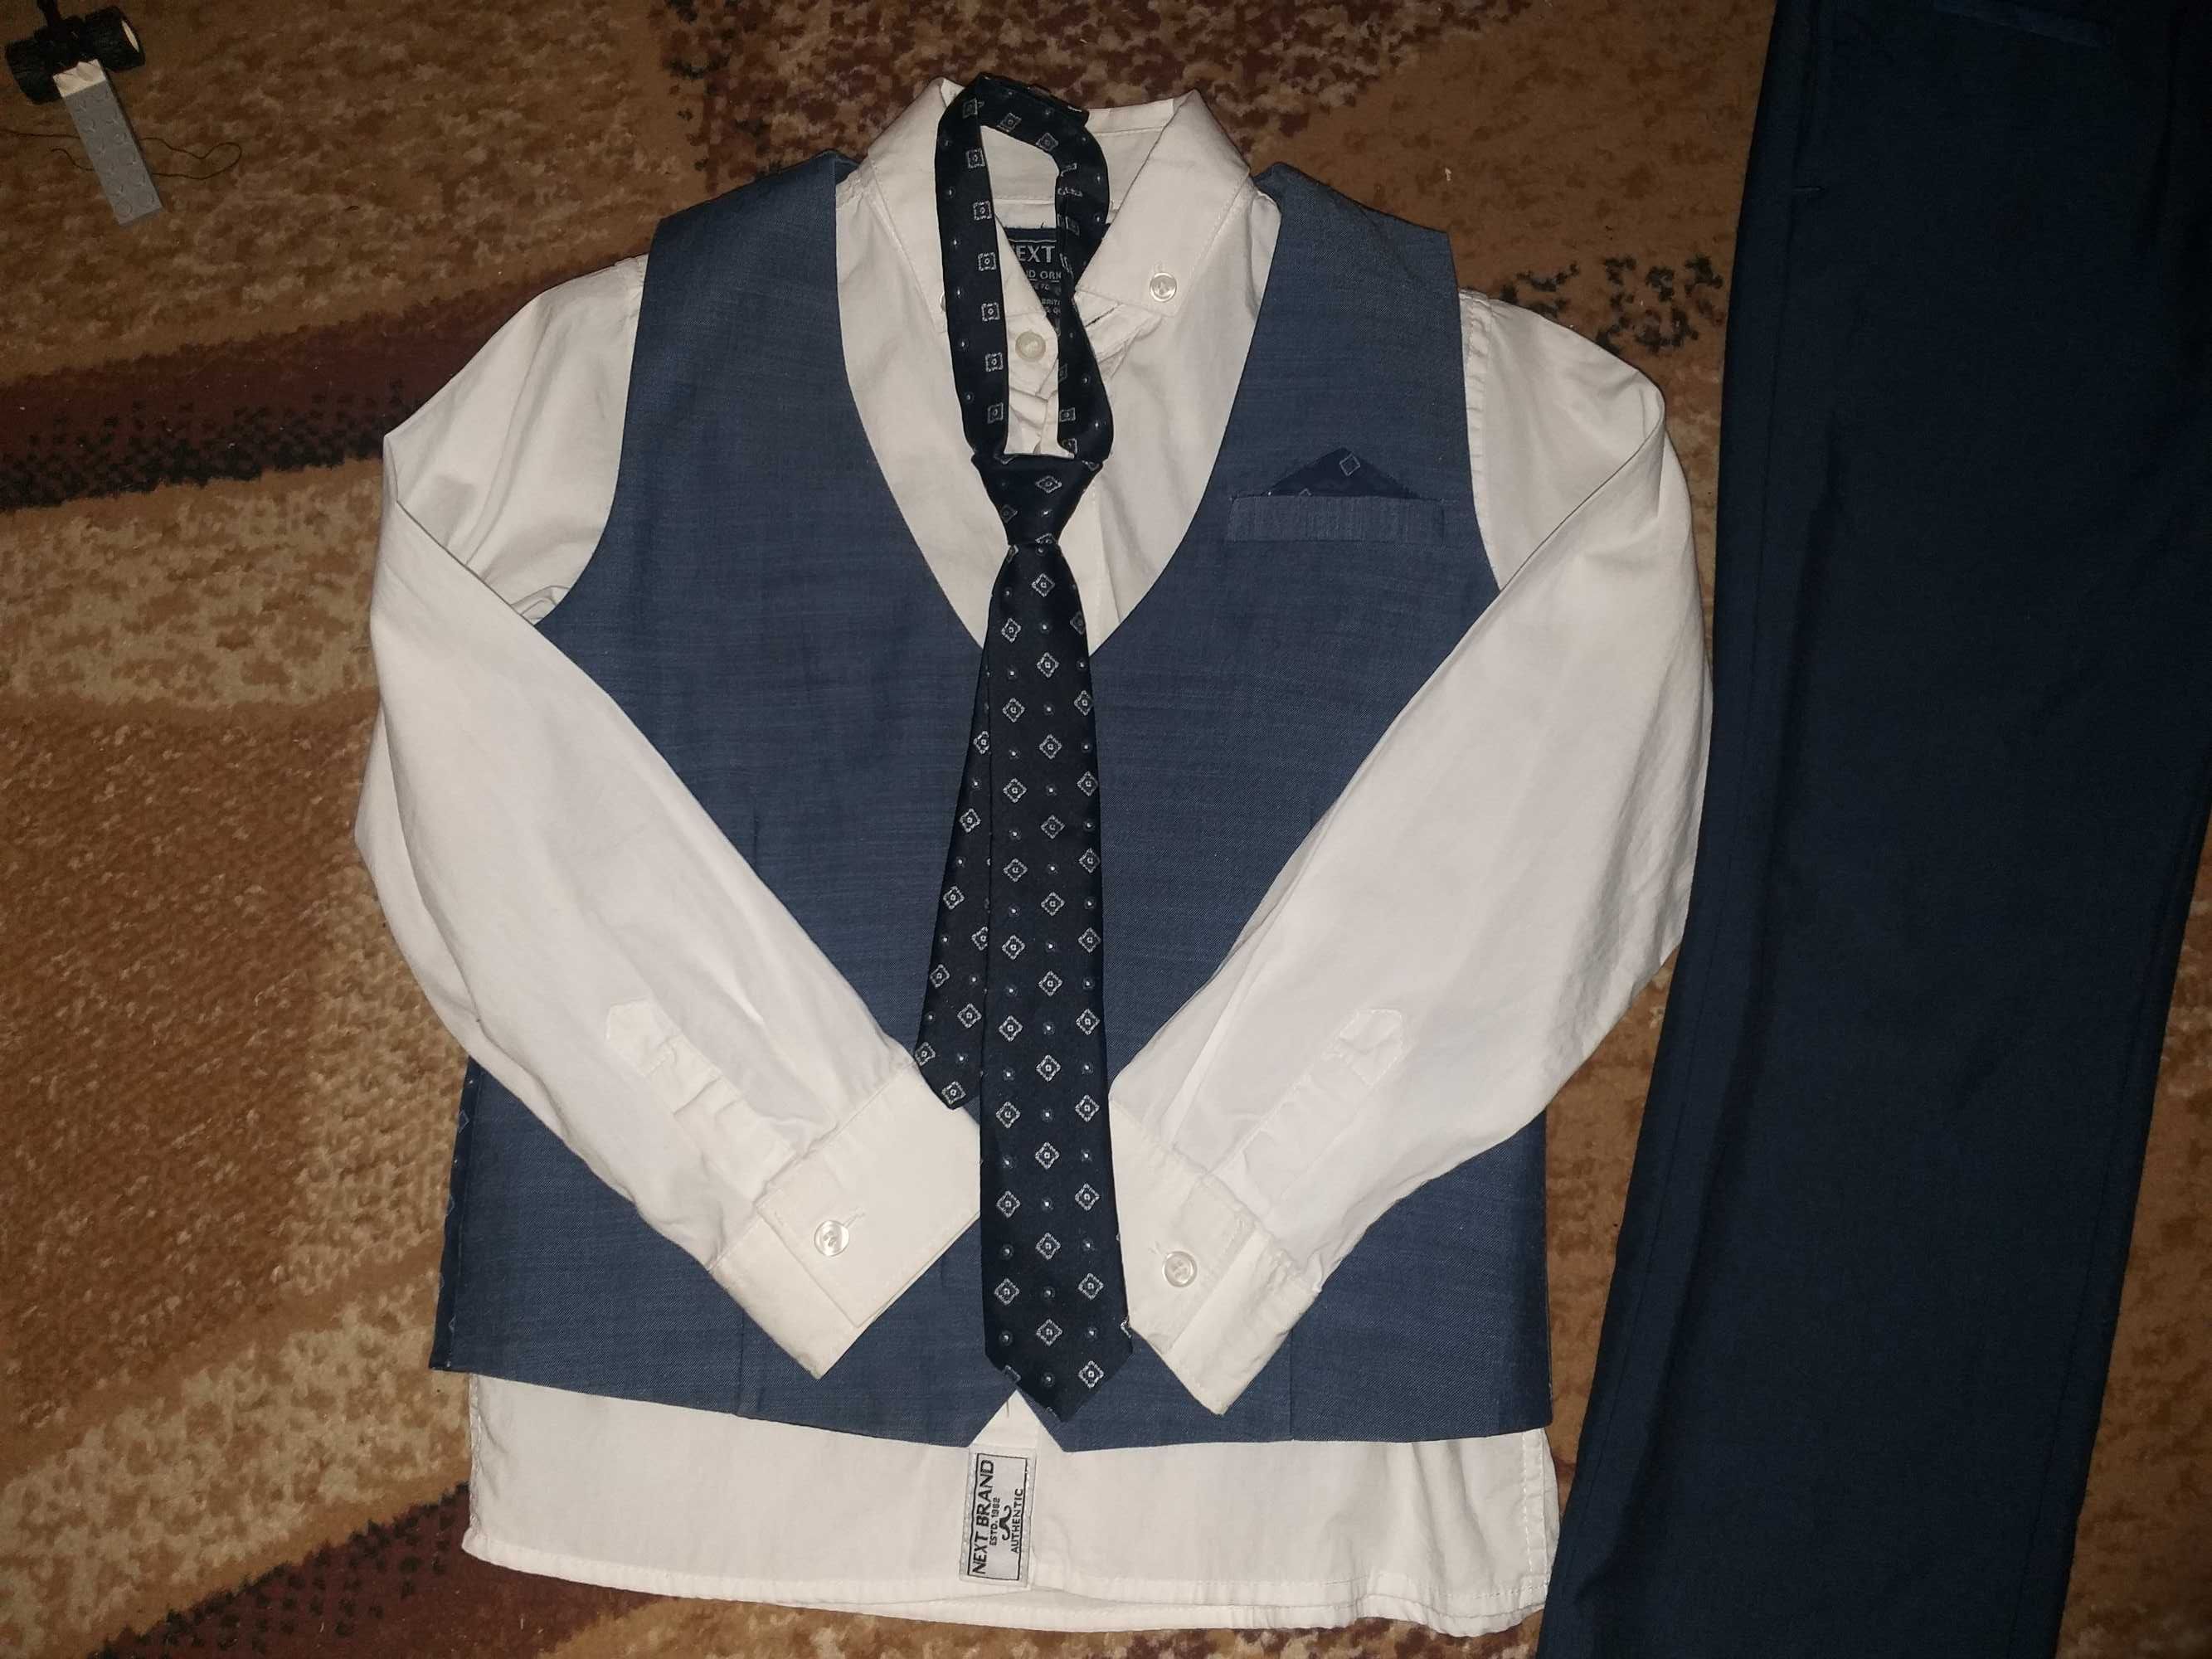 Фирменный школьный костюм,набор,комплект некст 116-122см,next,m&s 3 в1